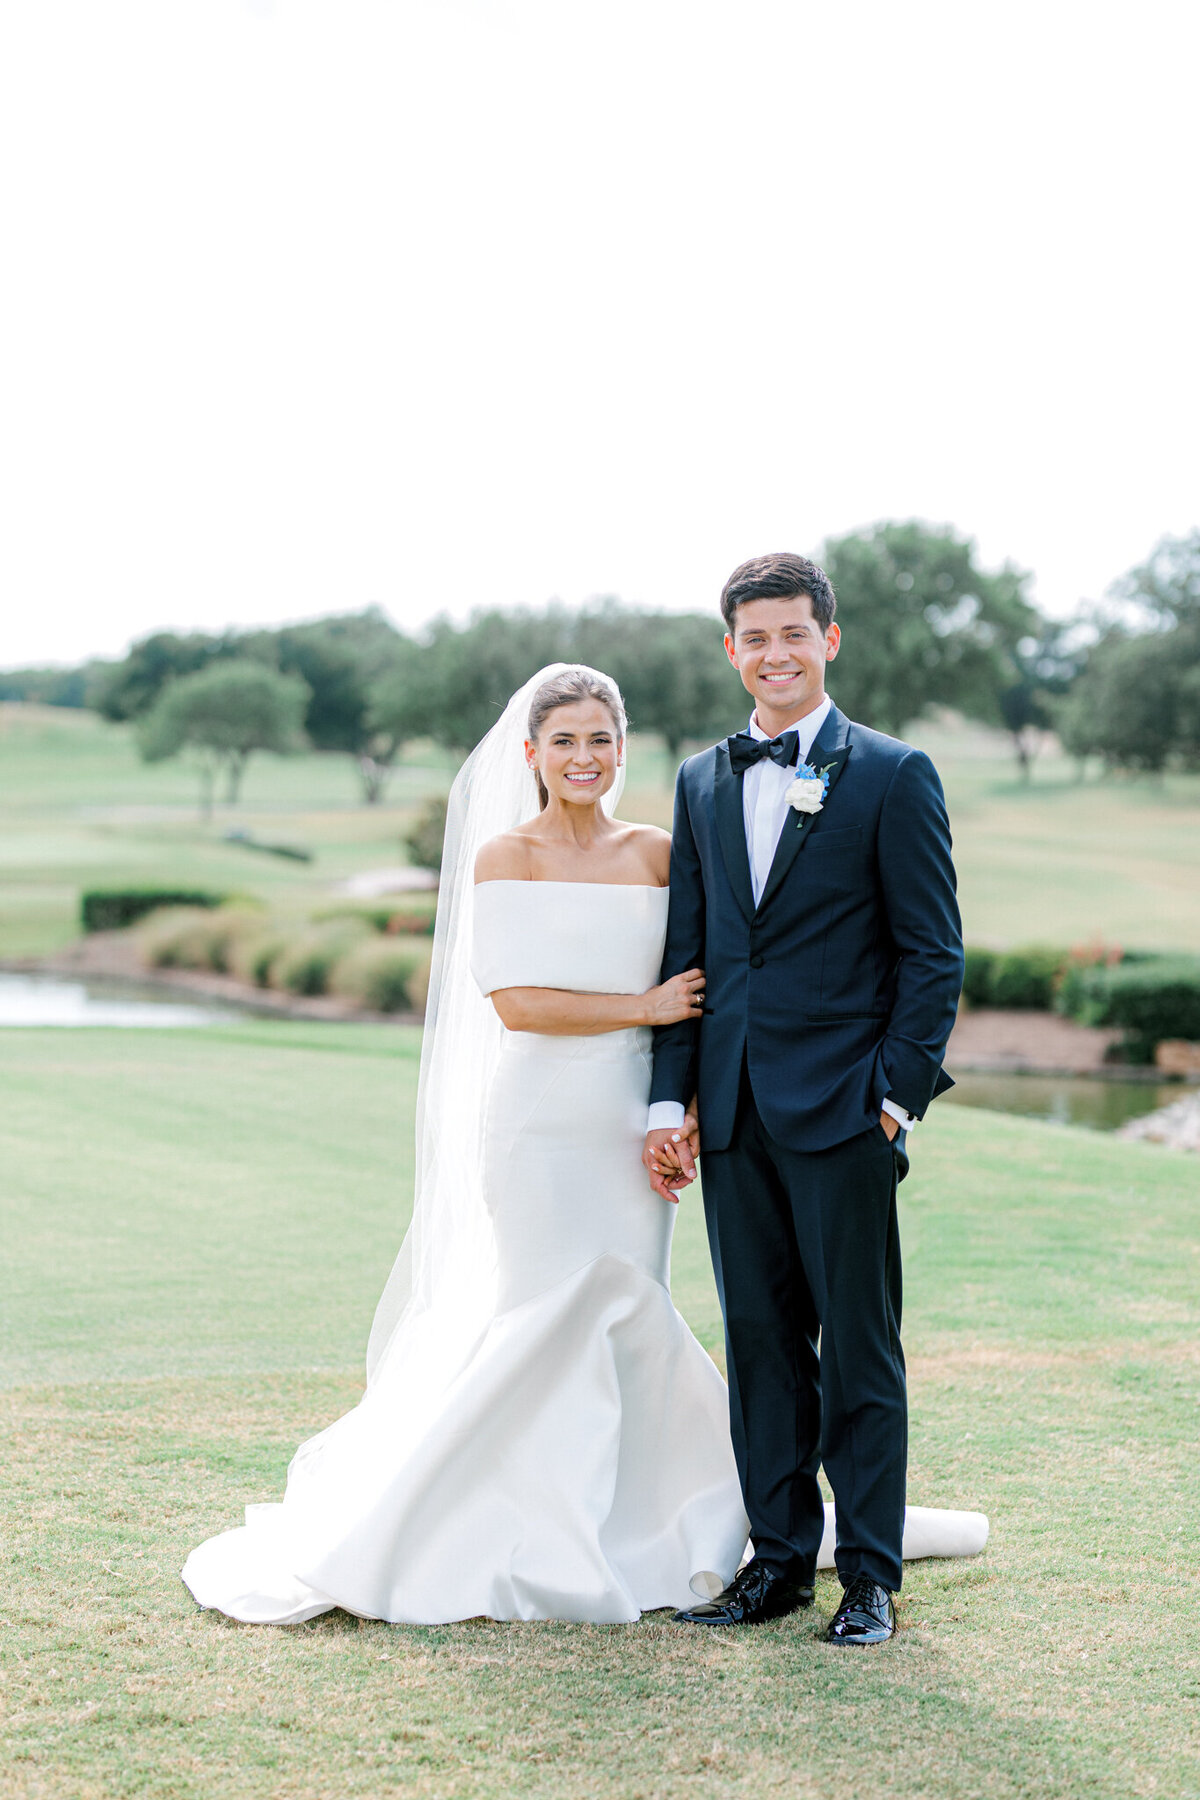 Annie & Logan's Wedding | Dallas Wedding Photographer | Sami Kathryn Photography-139